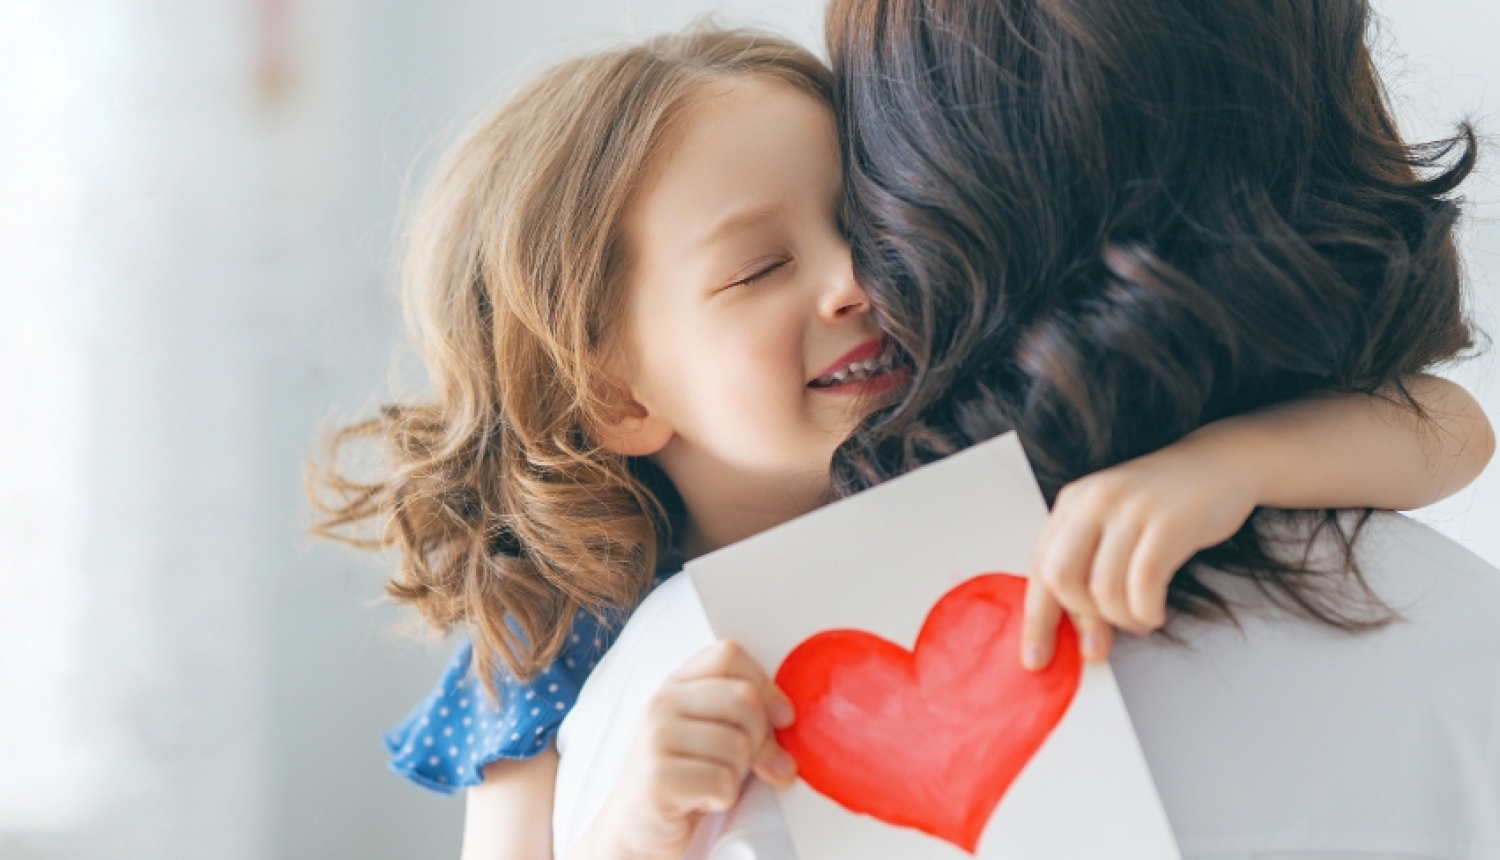 Meitene, apskāvusi mammu, tur rokās kartiņu ar uzzīmētu sirdi